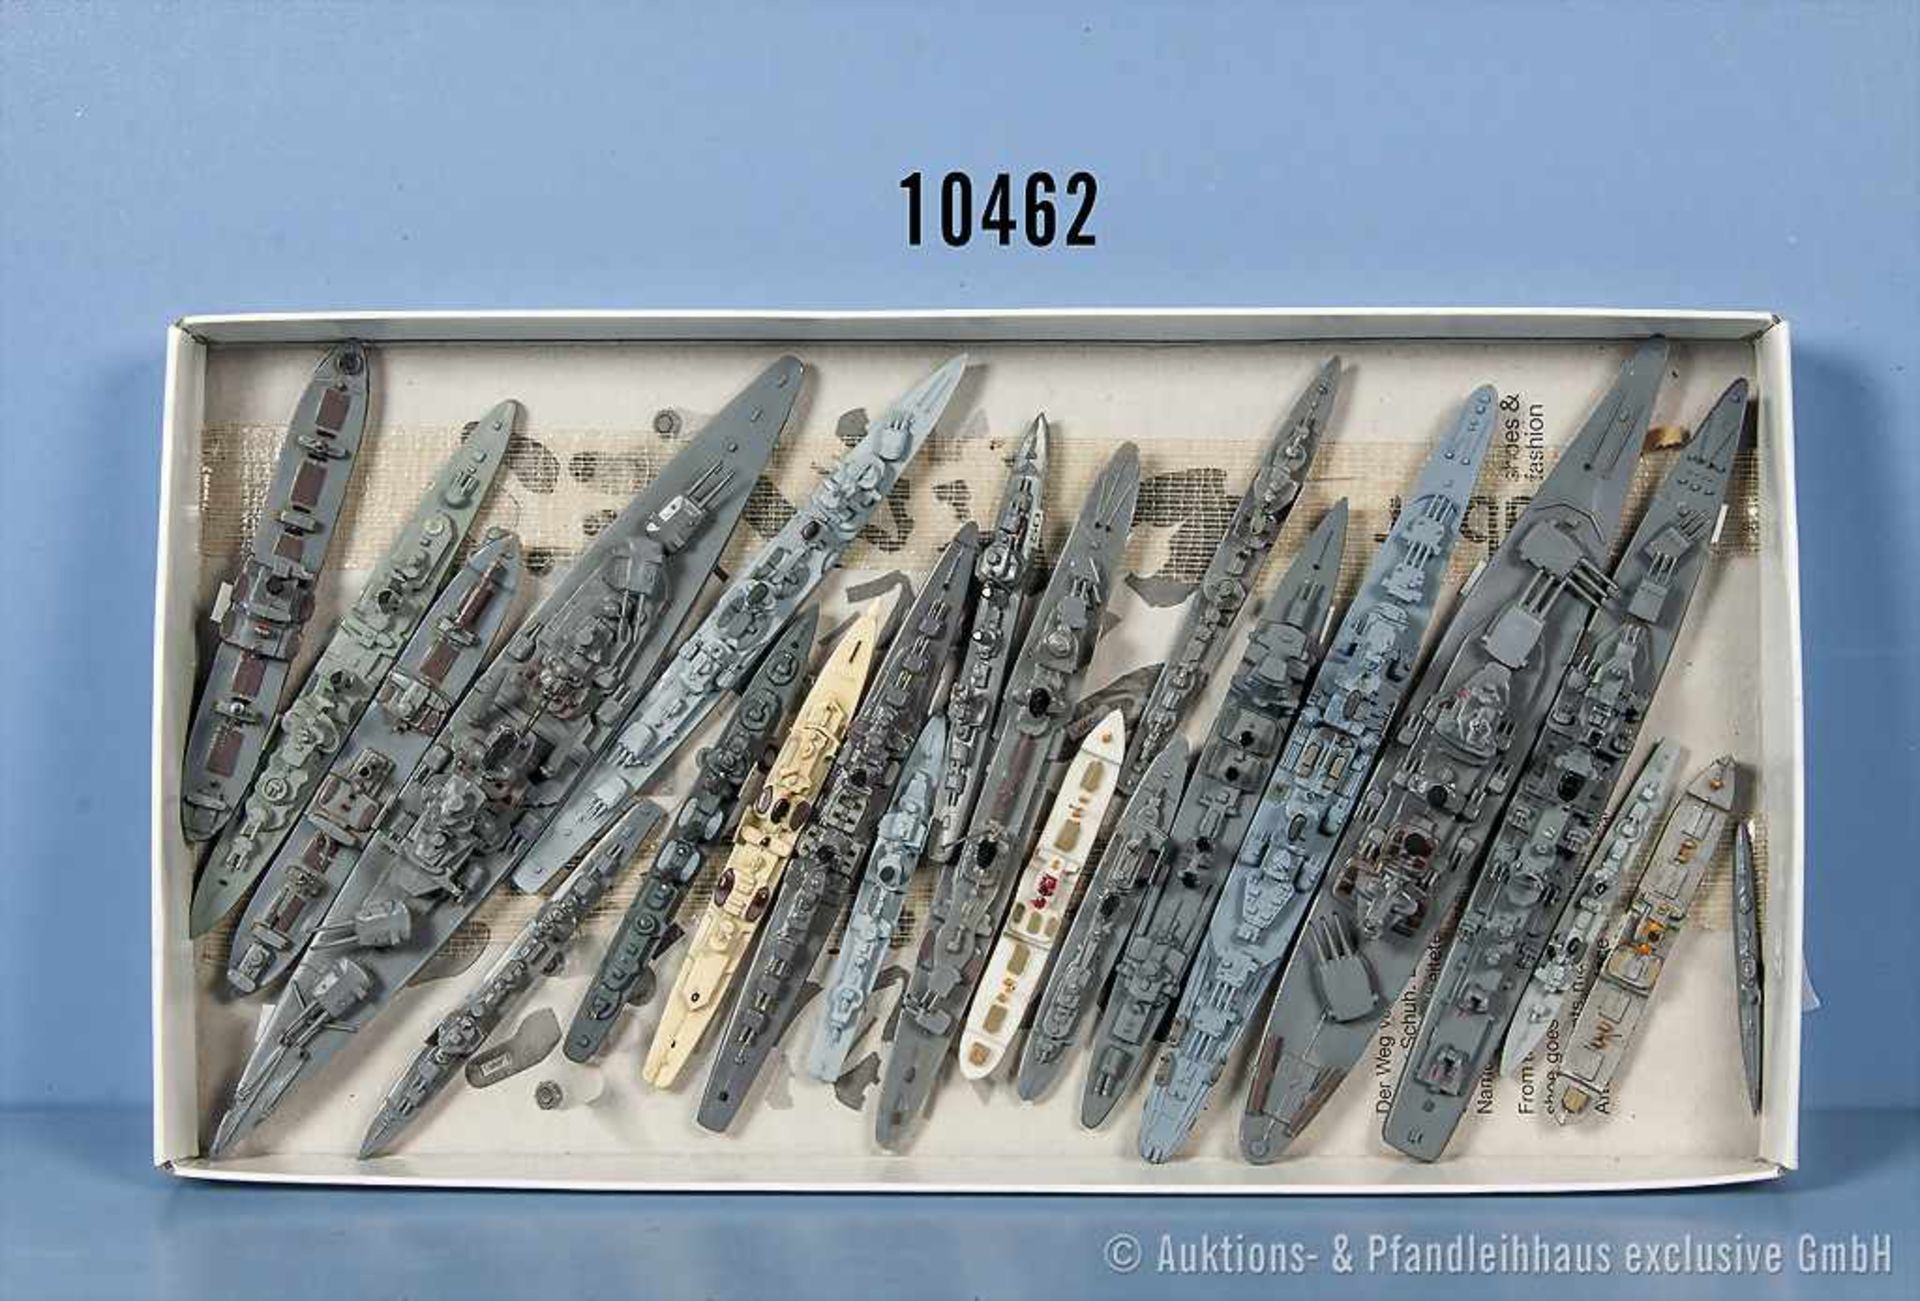 Konv. 22 Modellschiffe, Zivil- und Kriegsschiffe, M 1:1250, u. a. Schlachtschiffe, leichte und